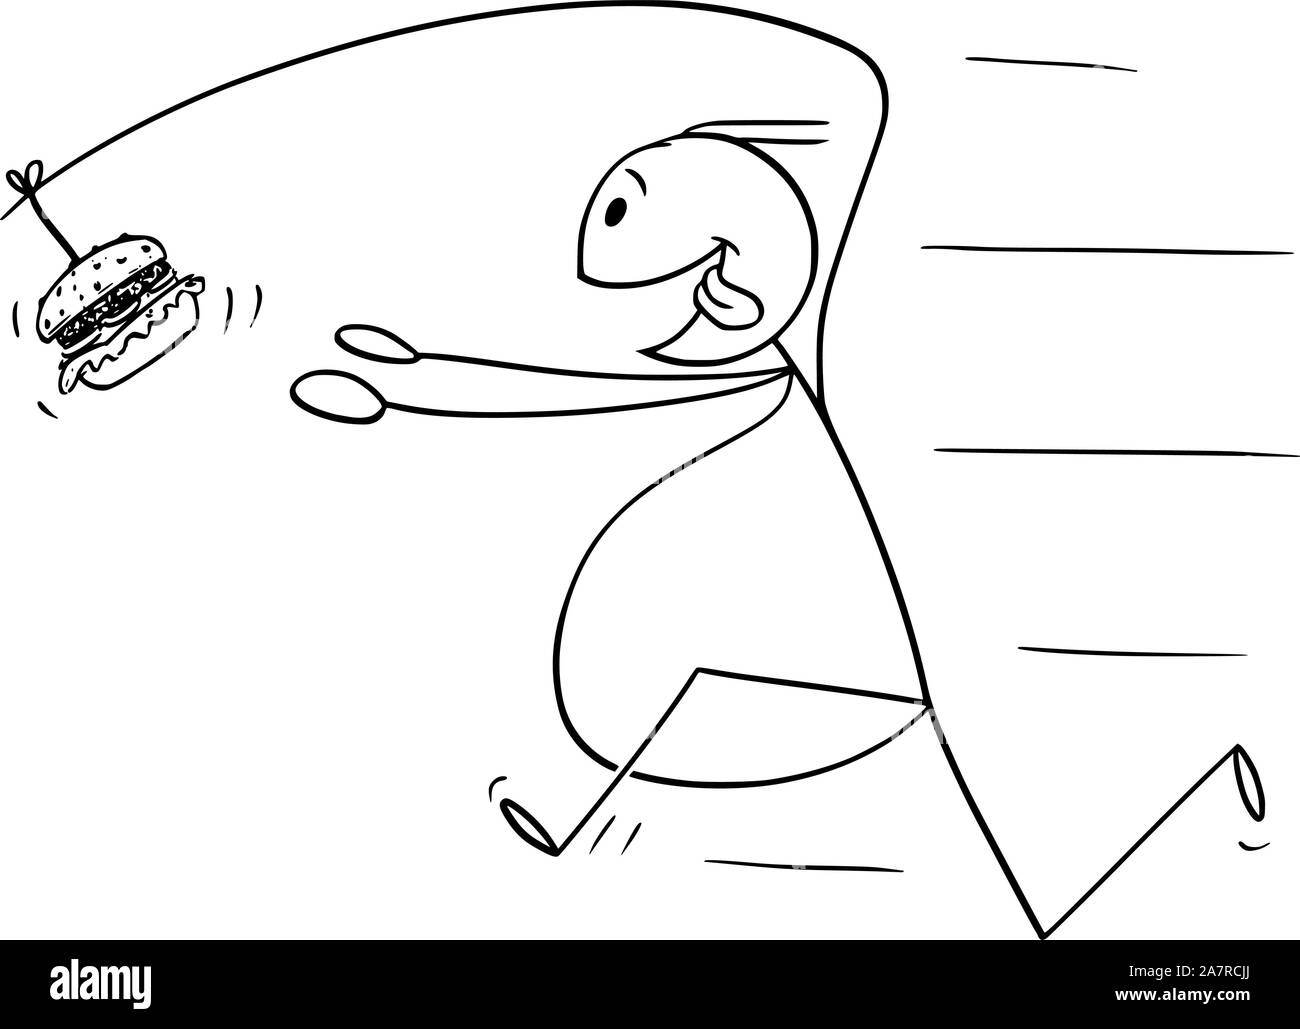 Vektor cartoon Strichmännchen Zeichnung konzeptuelle Abbildung: Fett Übergewicht Mann Jagt ungesunde Junk Food Burger oder Hamburger auf Angel auf dem Rücken befestigt. Stock Vektor